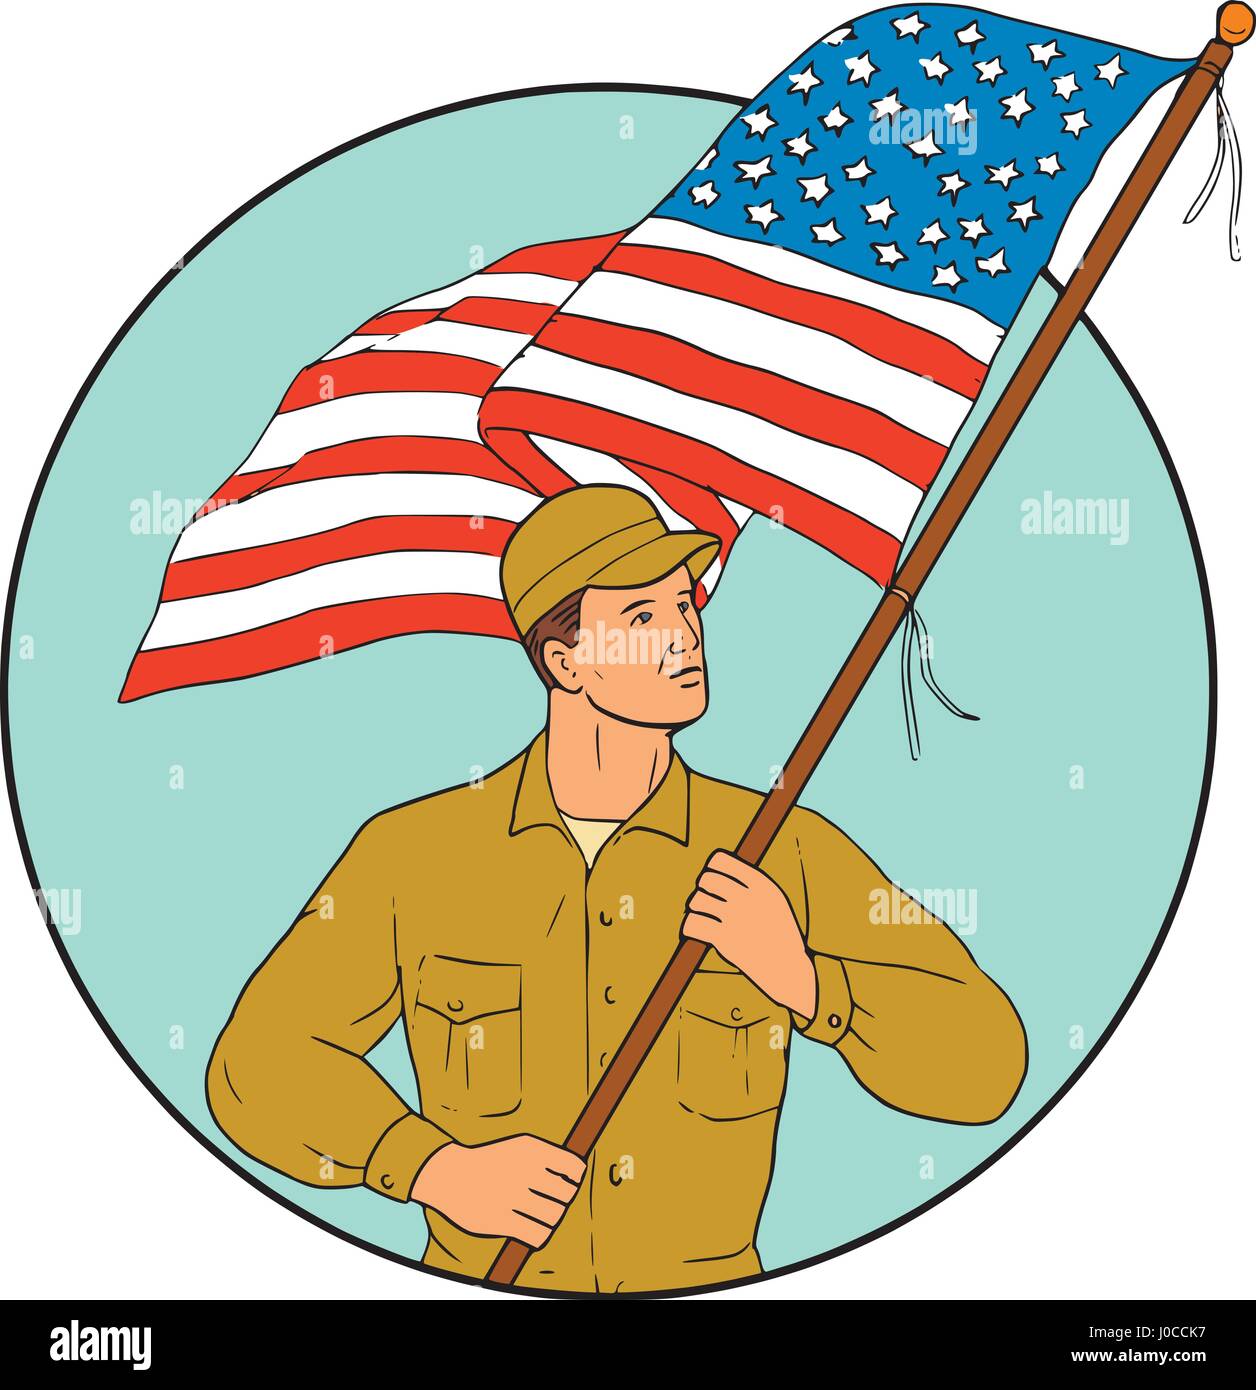 Croquis dessin illustration de style militaire, un soldat américain forme holding usa flag à la recherche sur le côté situé à l'intérieur du cercle sur isolated backgrou Illustration de Vecteur